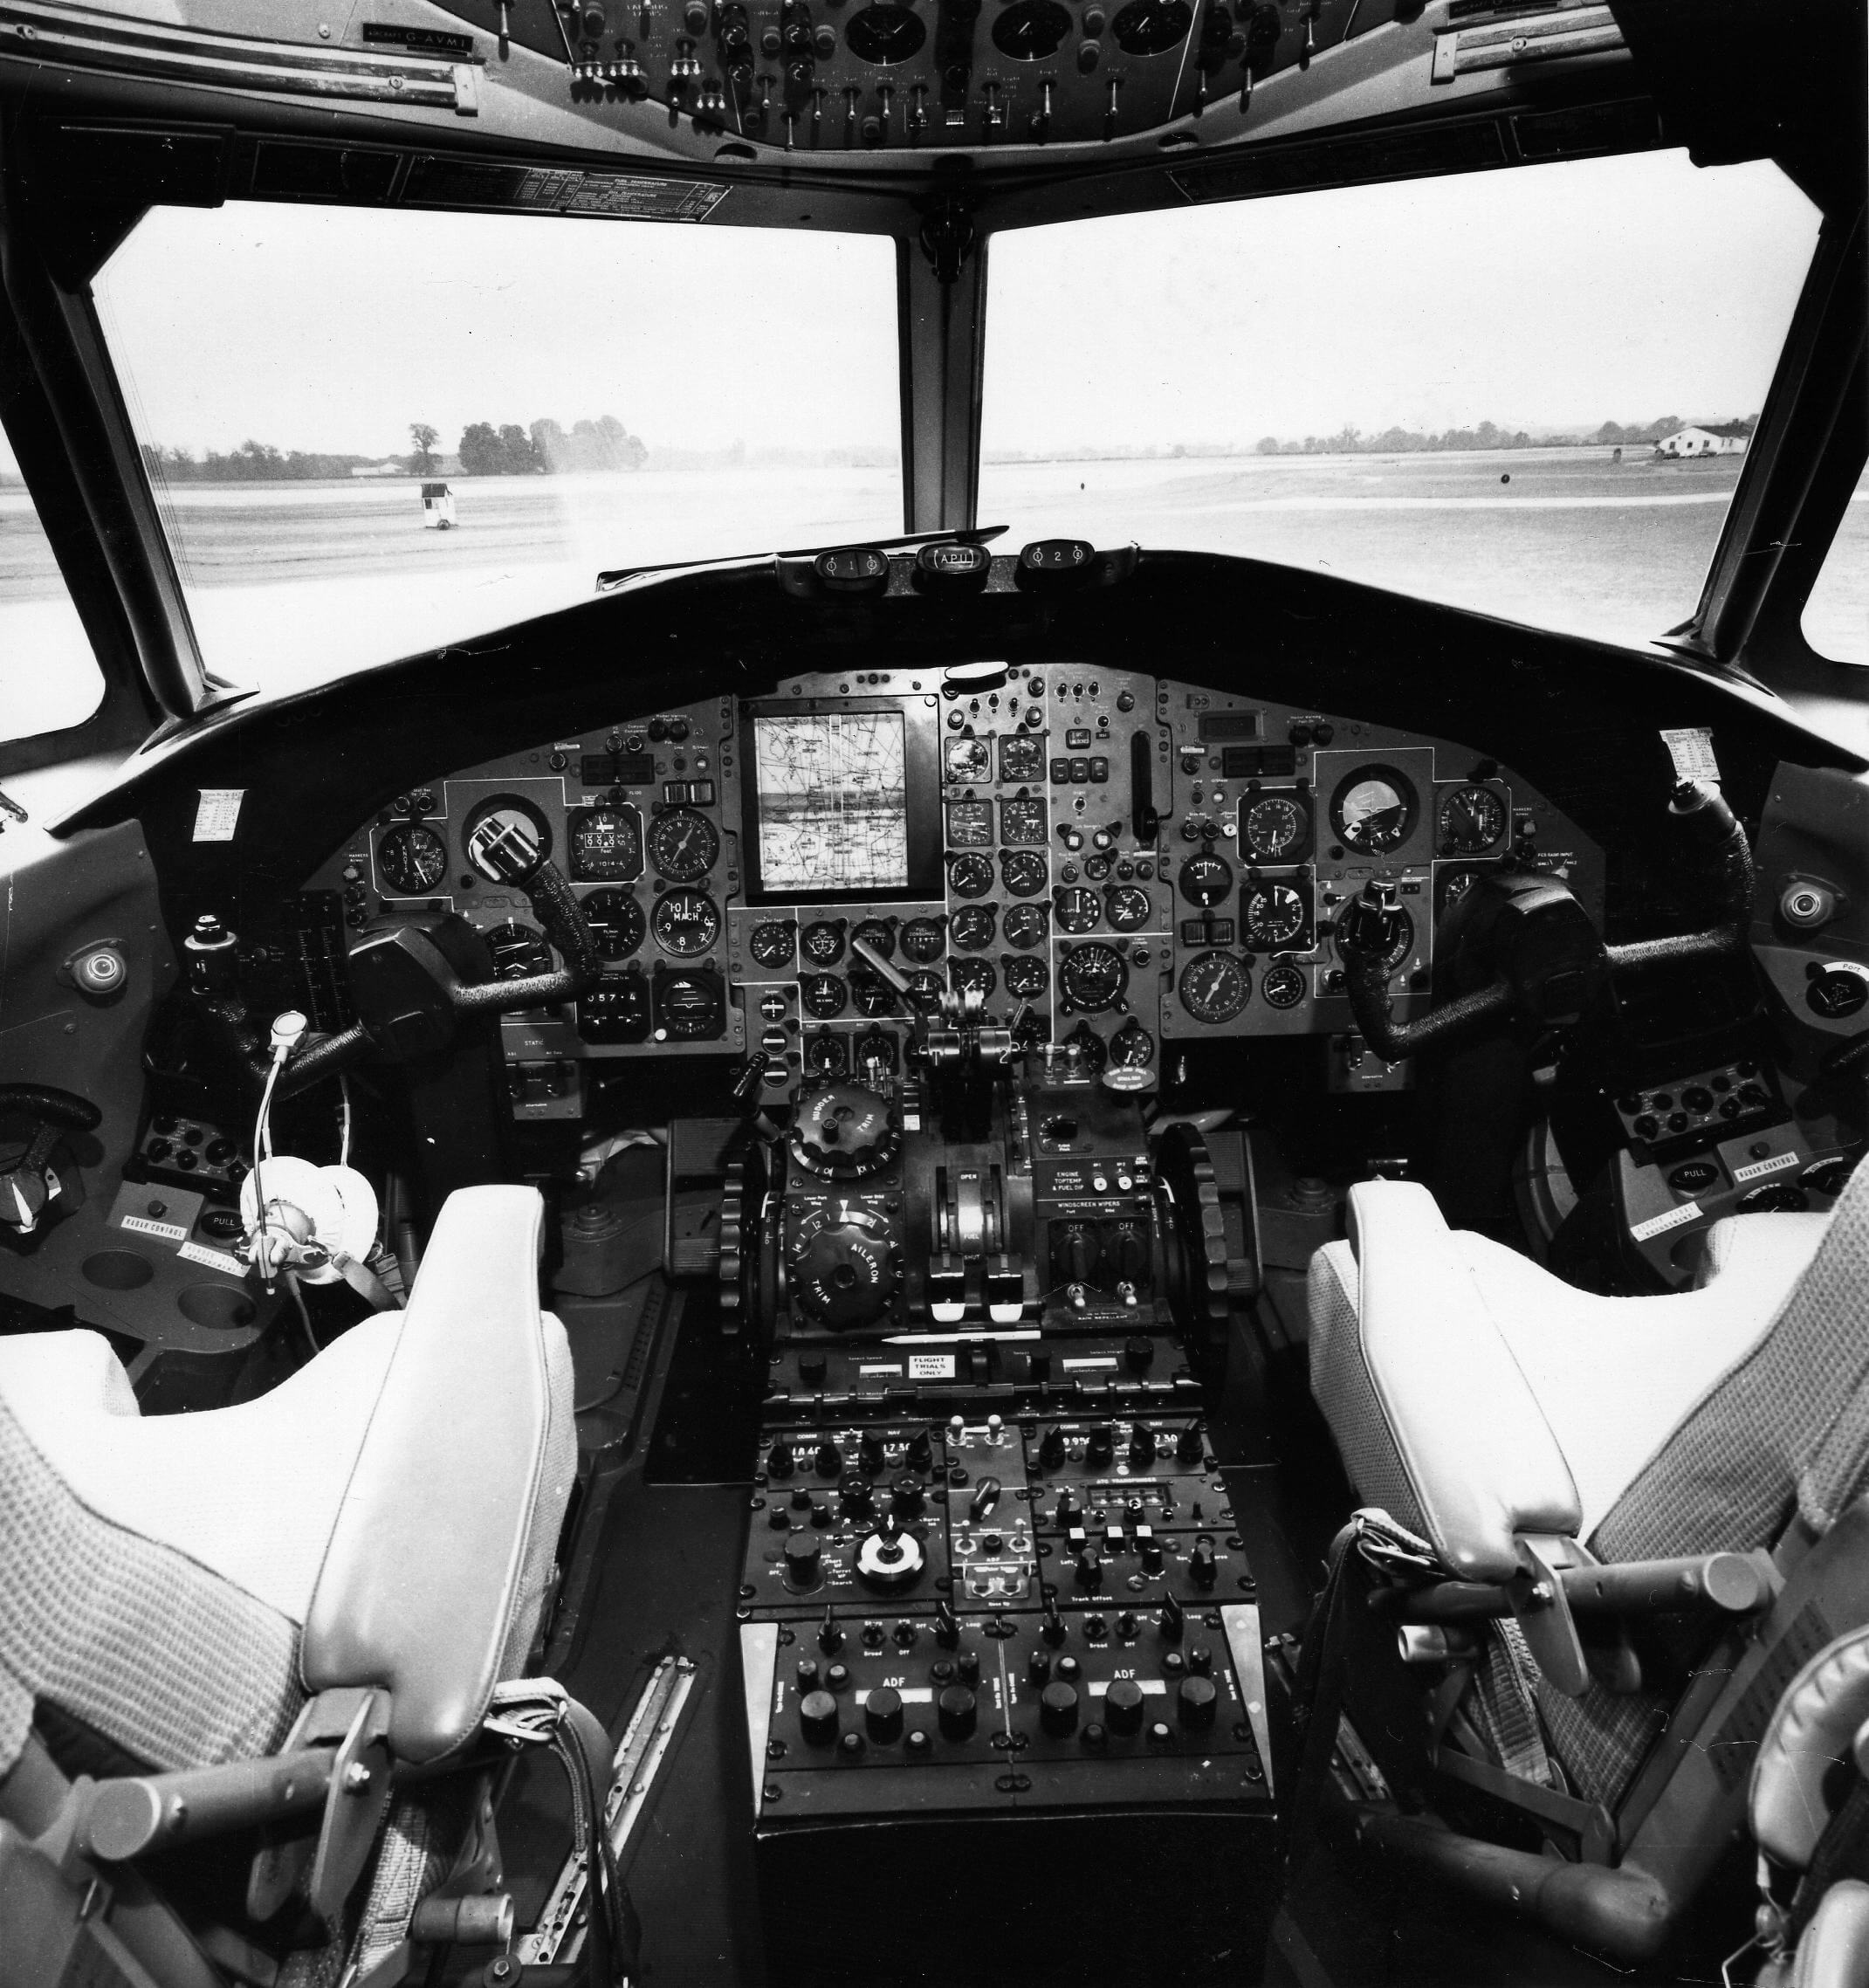 BAC 1-11 - Flight Manuals